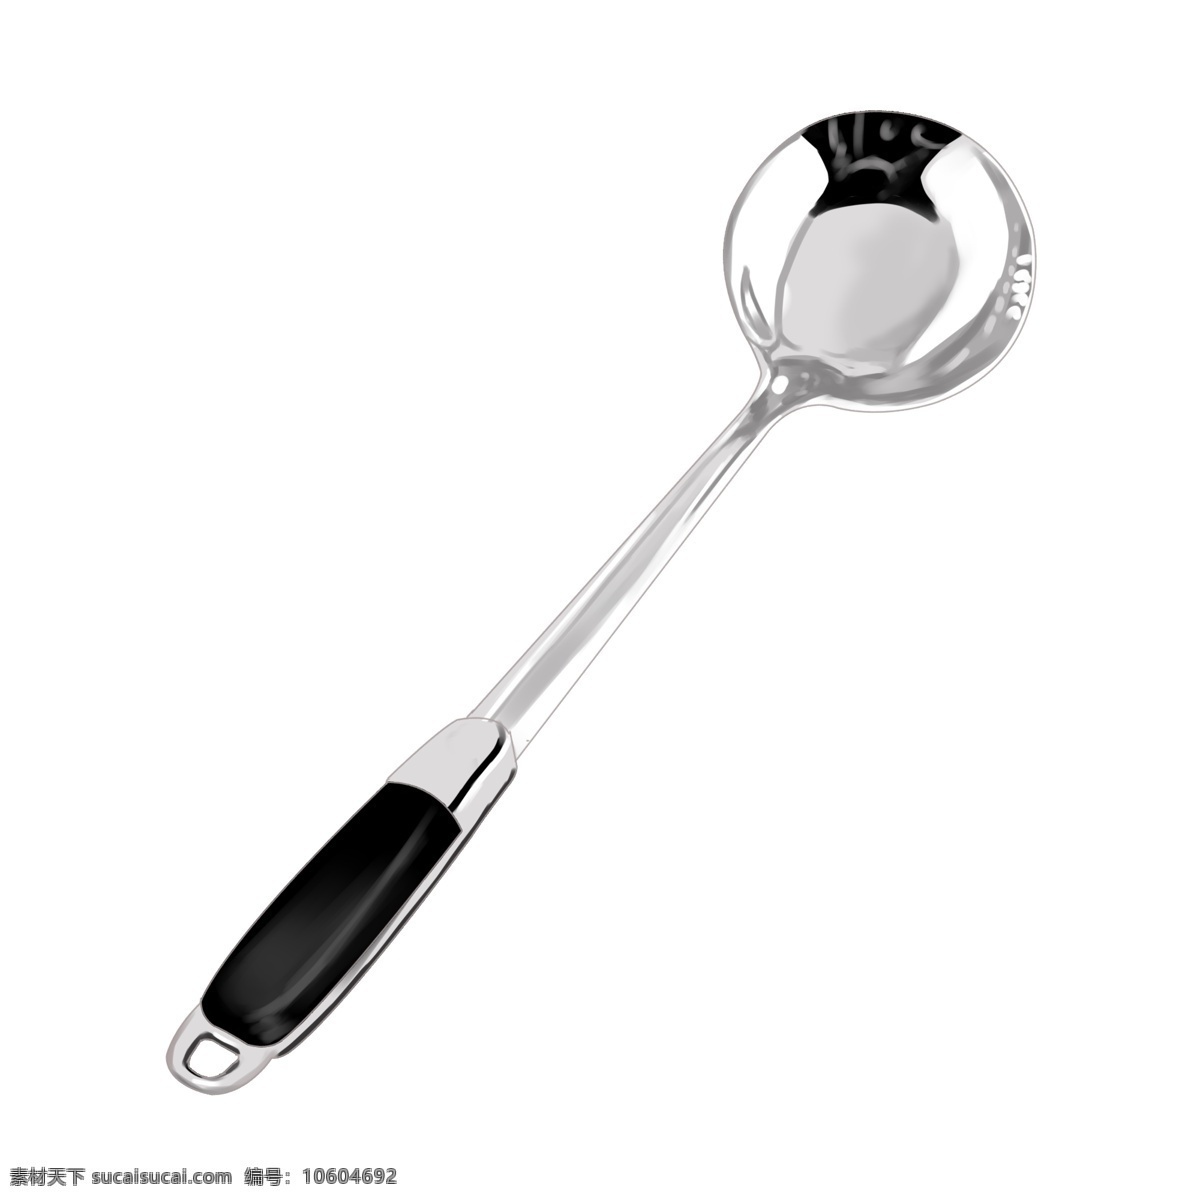 简易 银色 不锈钢 饭 勺 不锈钢饭勺 仿真 光滑 勺子 半圆 实物 汤勺 饭勺 金属 餐具 简约